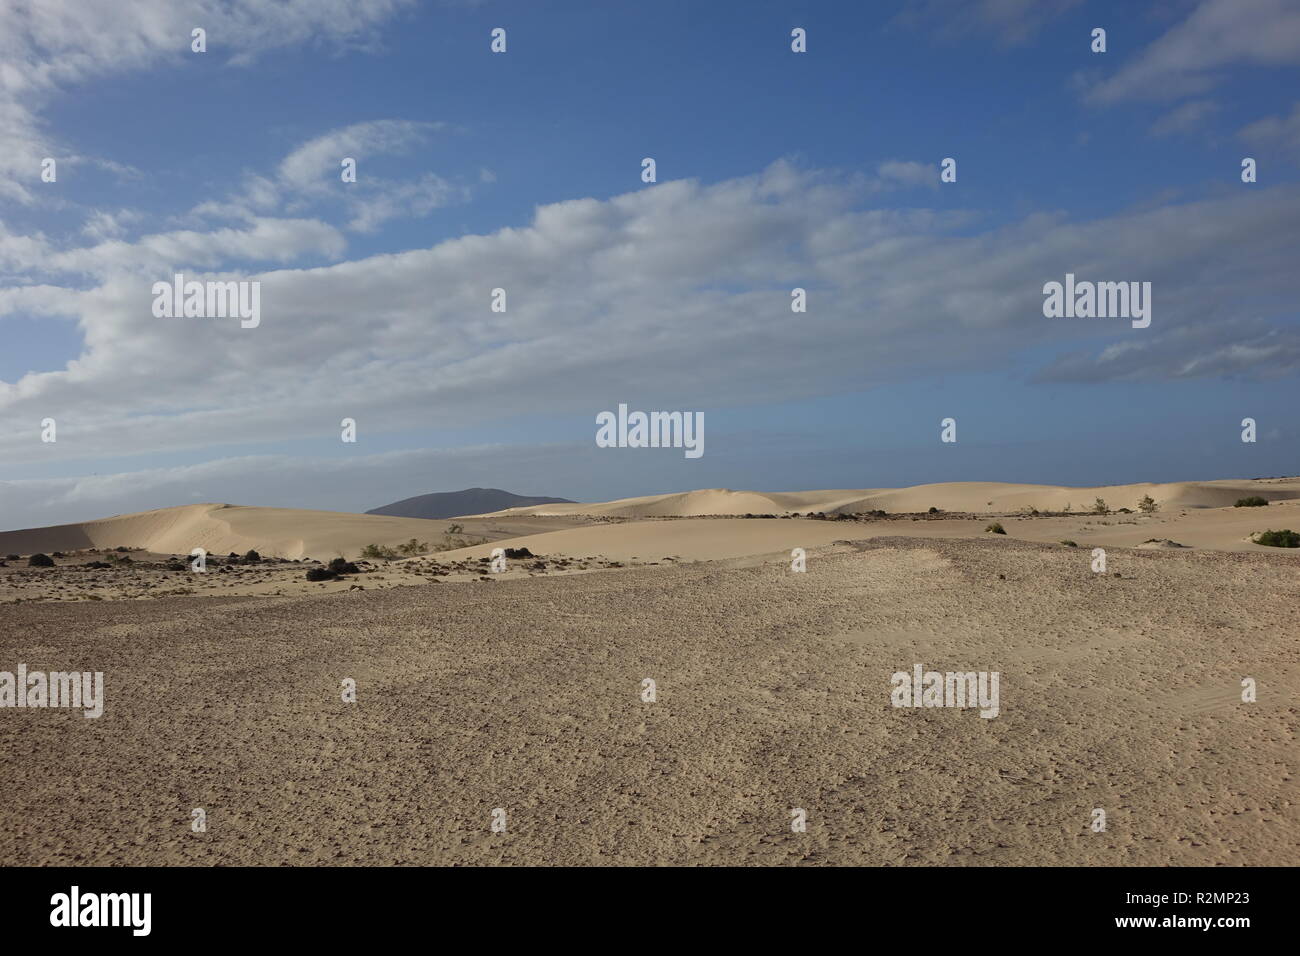 En fin d'après-midi, soleil bas, afficher les textures et les motifs dans le sable dans le parc naturel de Corralejo, Fuerteventura, Canary-Islands,,Espagne. Banque D'Images